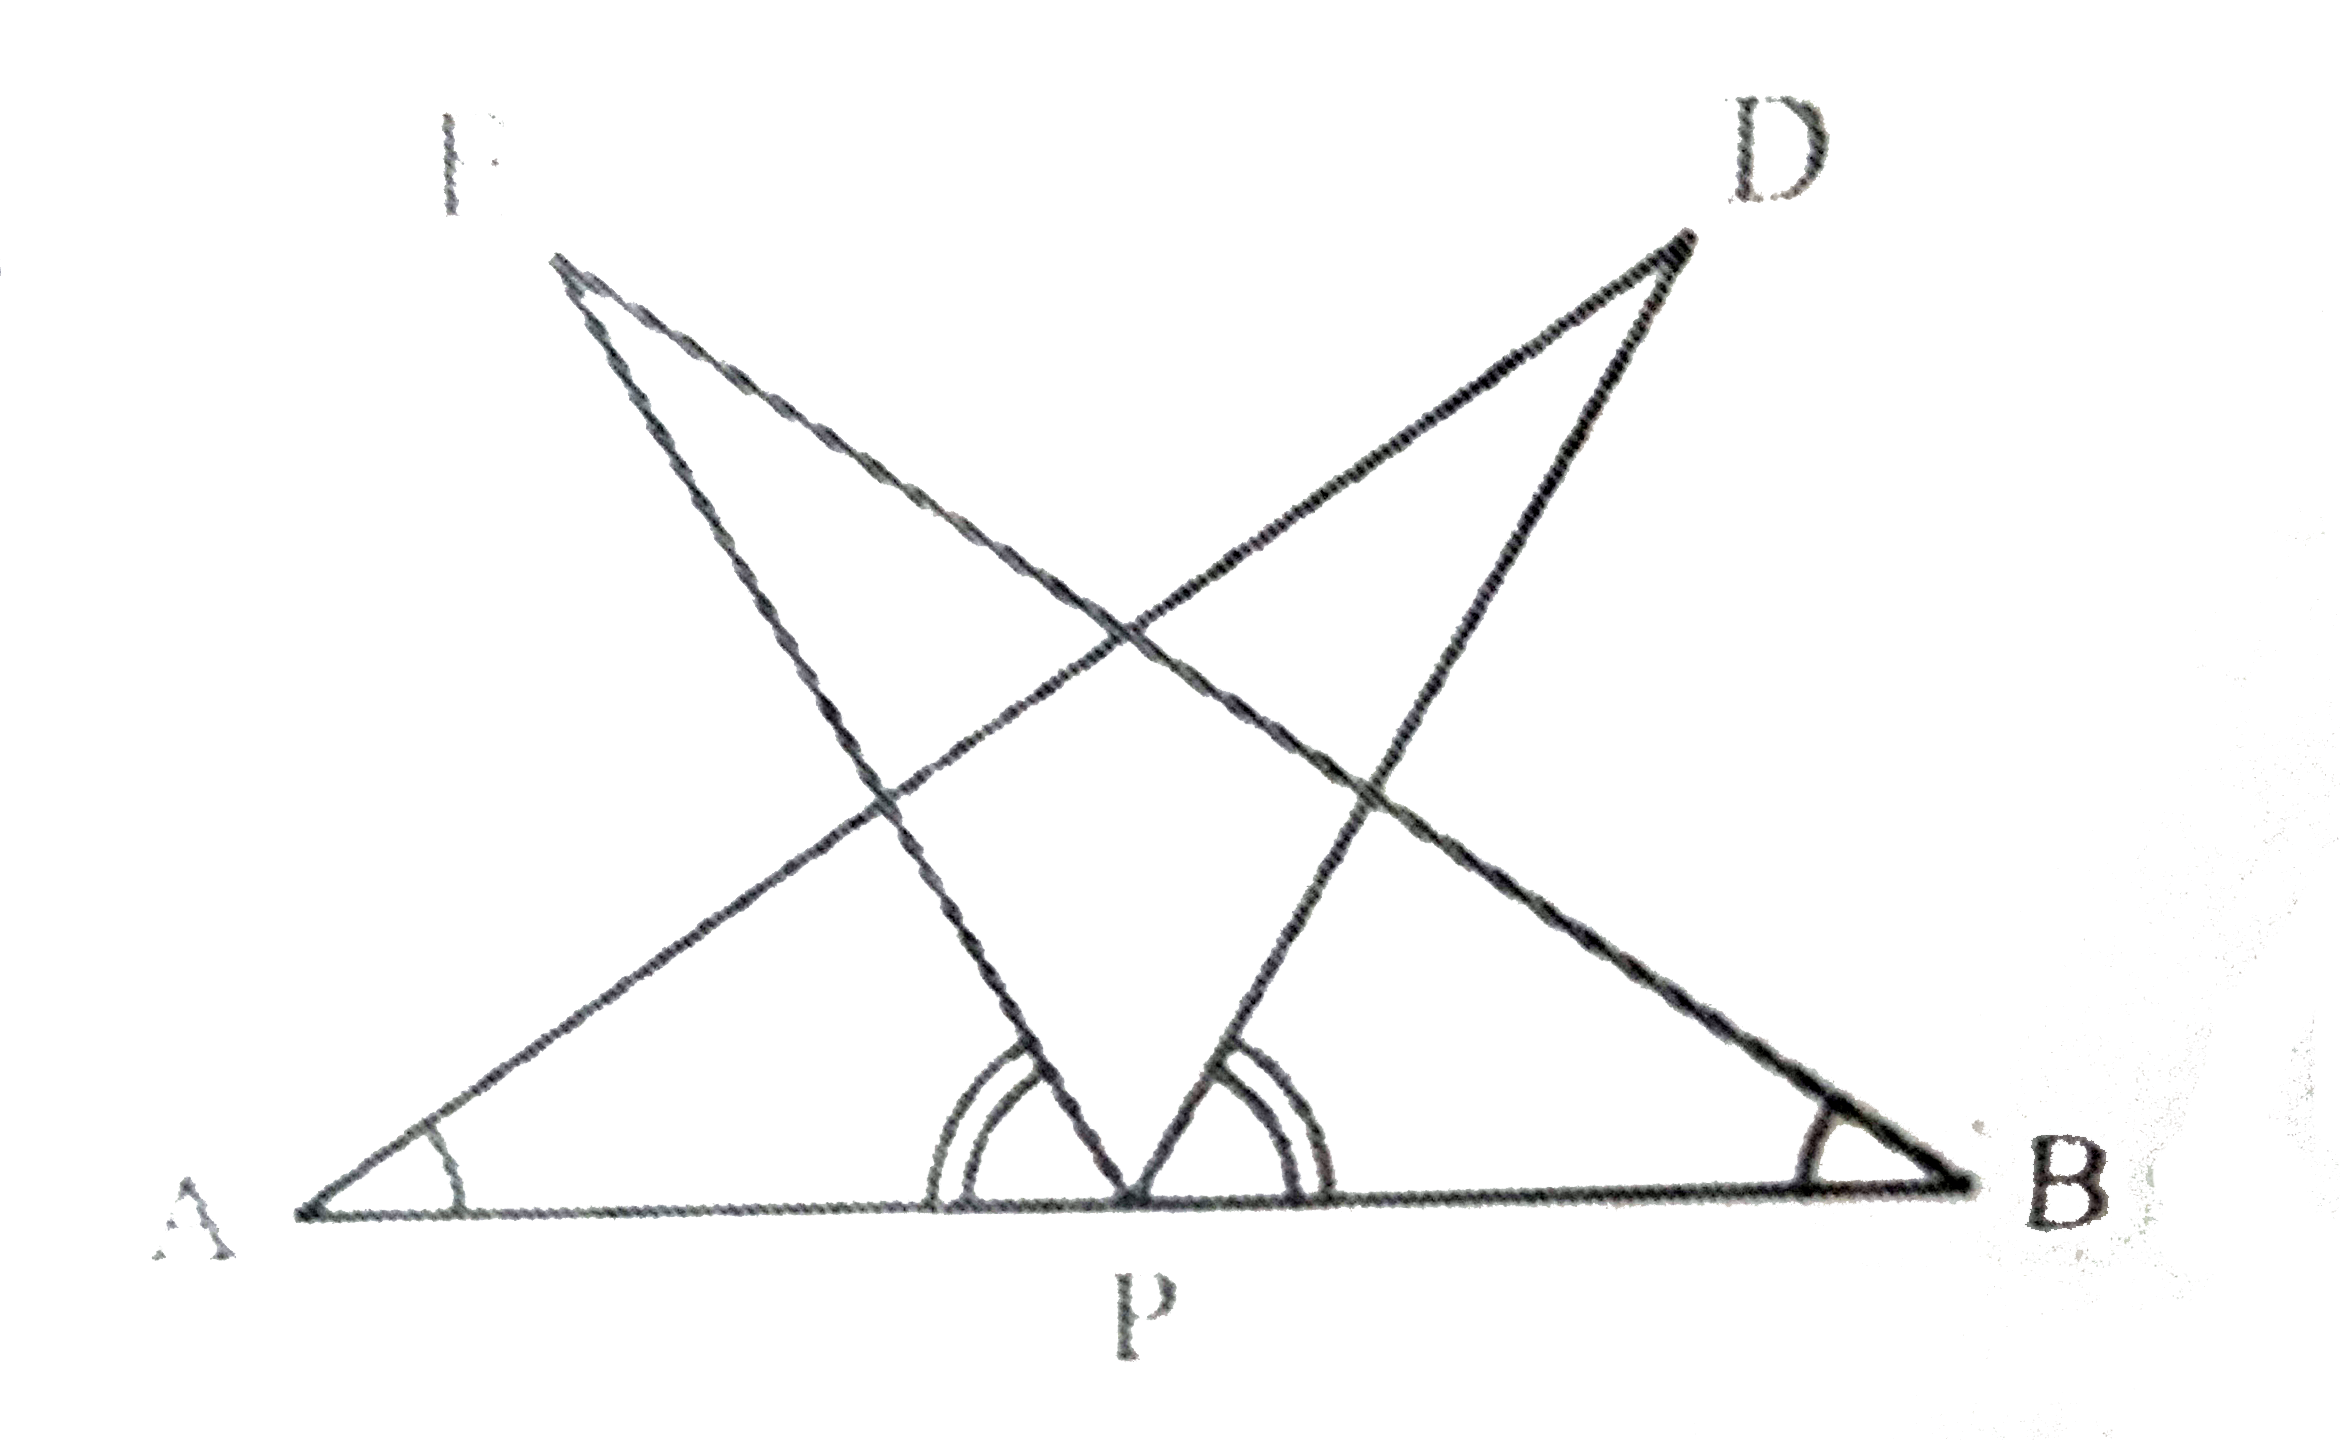 AB एक रेखाखंड है और P इसका मध्य-बिंदु है। D और E रेखाखंड AB के एक ही ओर स्थित दो बिंदु इस प्रकार हैं कि angle BAD = angle ABE  और angle  EPA = angle DPA  है। दर्शाइए कि    (i) Delta DAP ~= Delta EBP   (ii) AD = BE